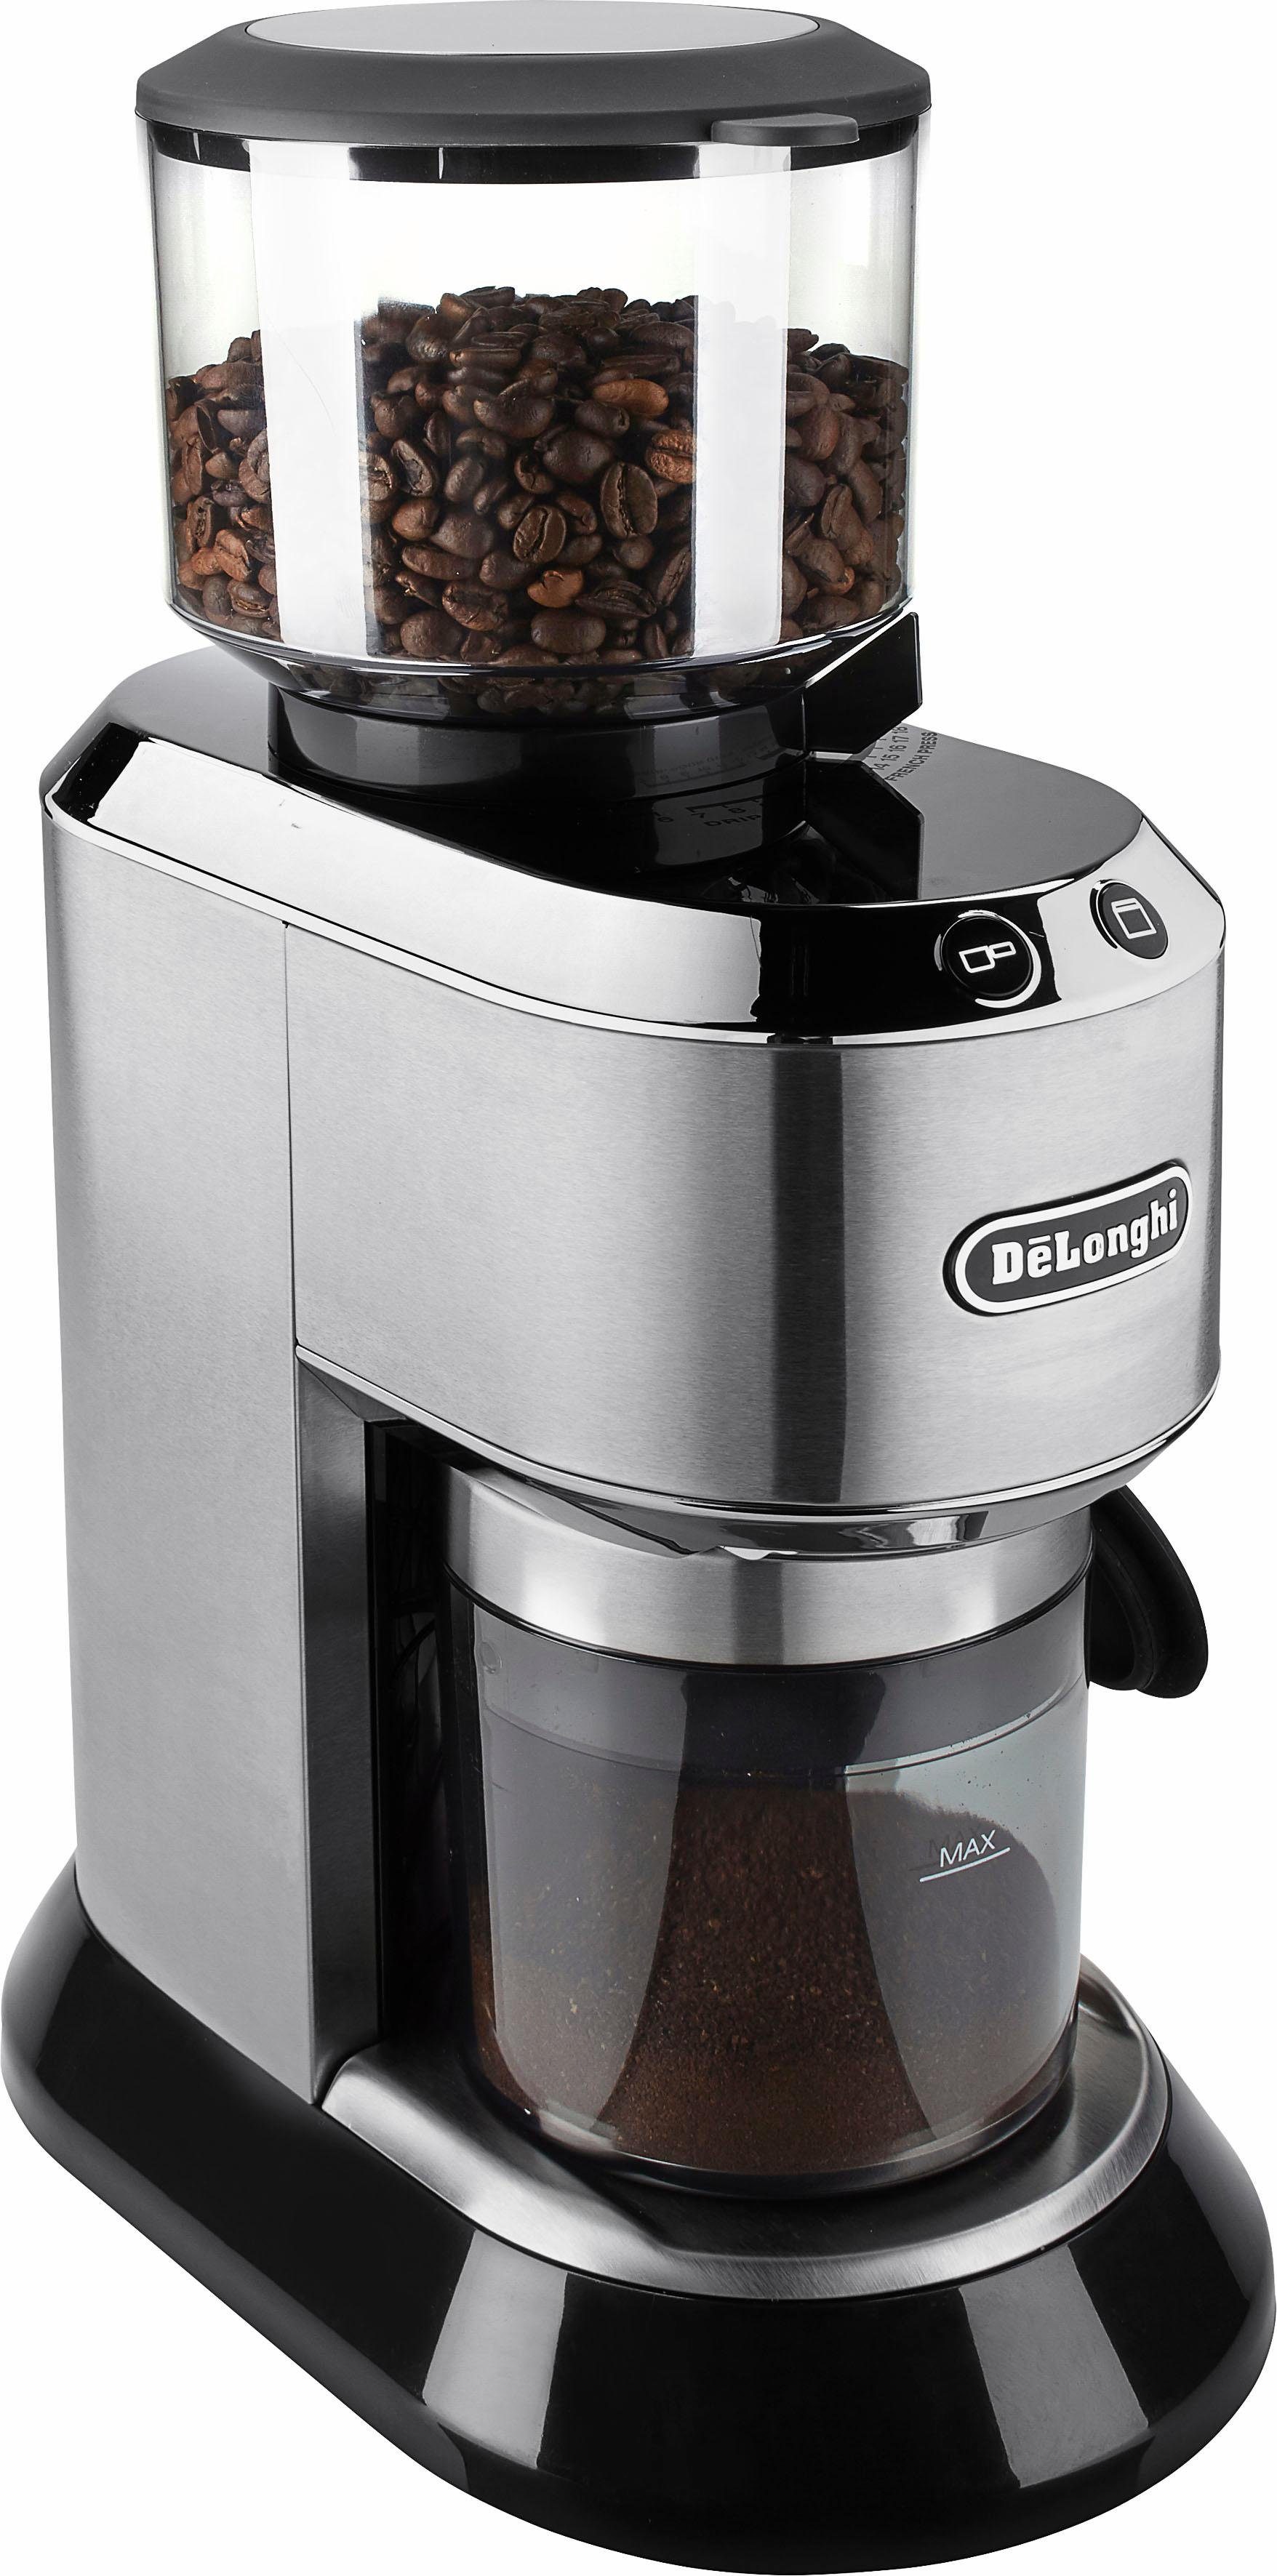 De'Longhi Kaffeemühle Dedica KG520.M, 150 W, Kegelmahlwerk, 350 g  Bohnenbehälter, inkl. Siebträgeradapter online kaufen | OTTO